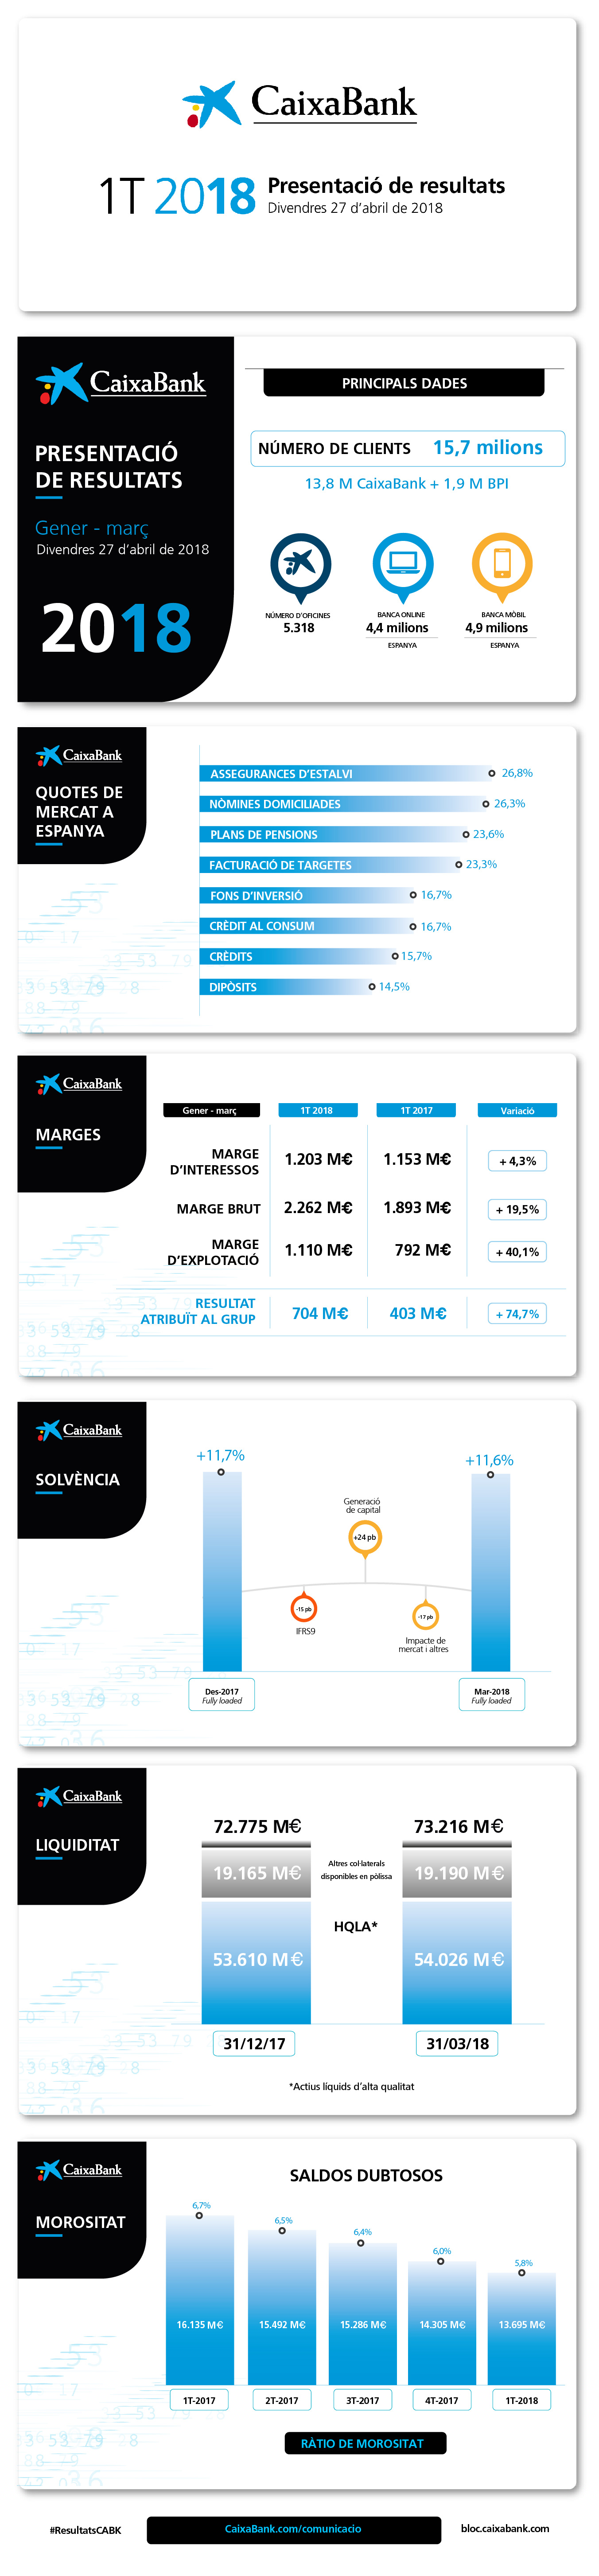 Infografia Resultats CaixaBank 1T 2018